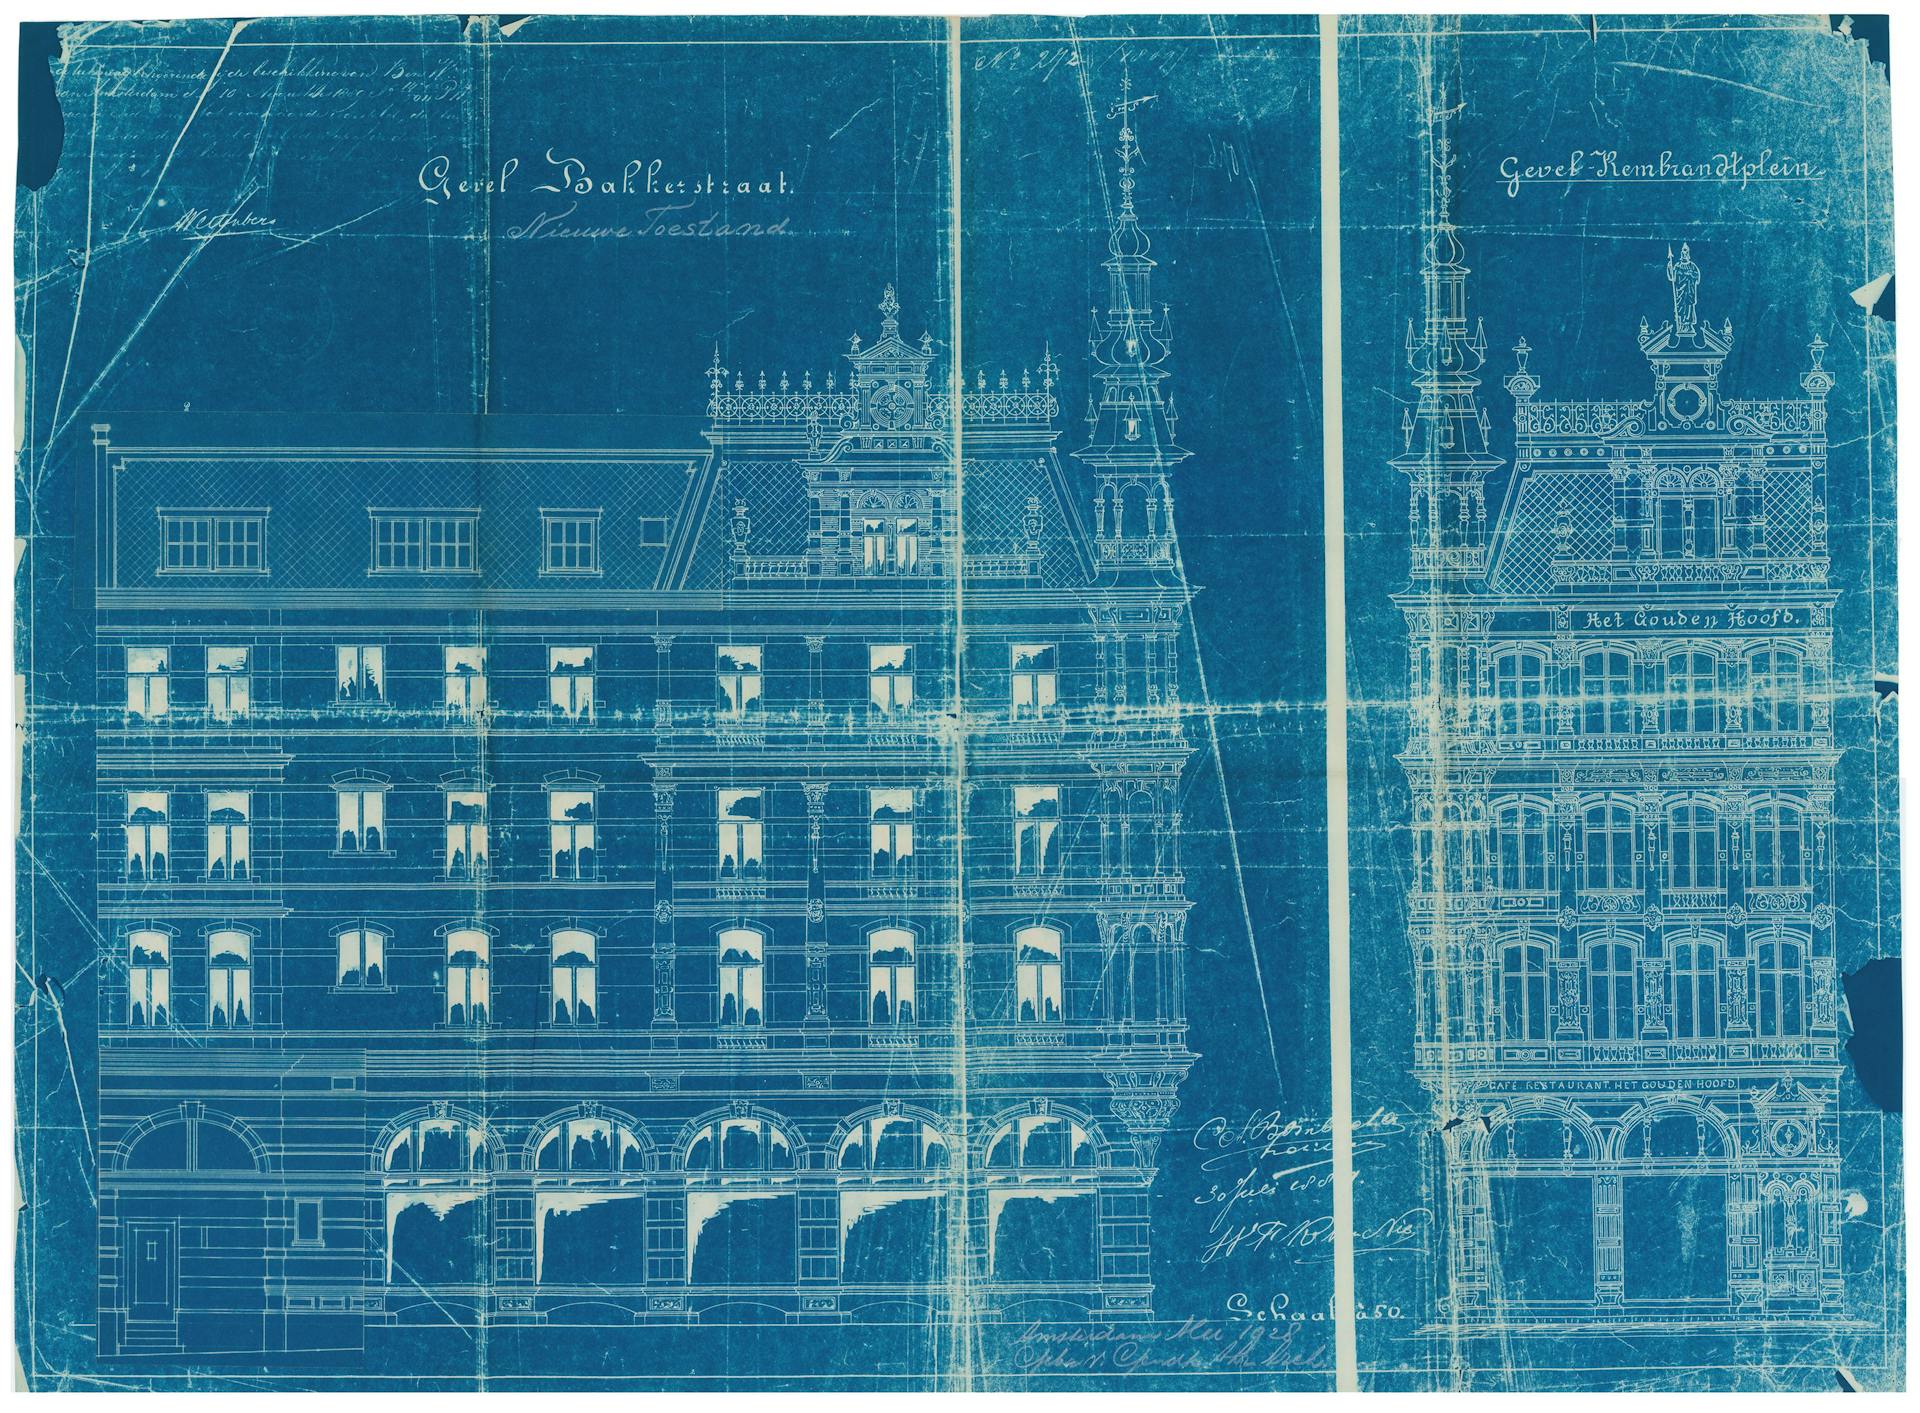 Blauwdruk uit 1928 van de oorspronkelijke ontwerptekening uit 1890 van architect  C.A. Bombach voor café-restaurant Het Gouden Hoofd (nu café l’Opera) in Amsterdam. Het werd in 1928 door architectenbureau Van Gendt verbouwd. Architectenbur… 